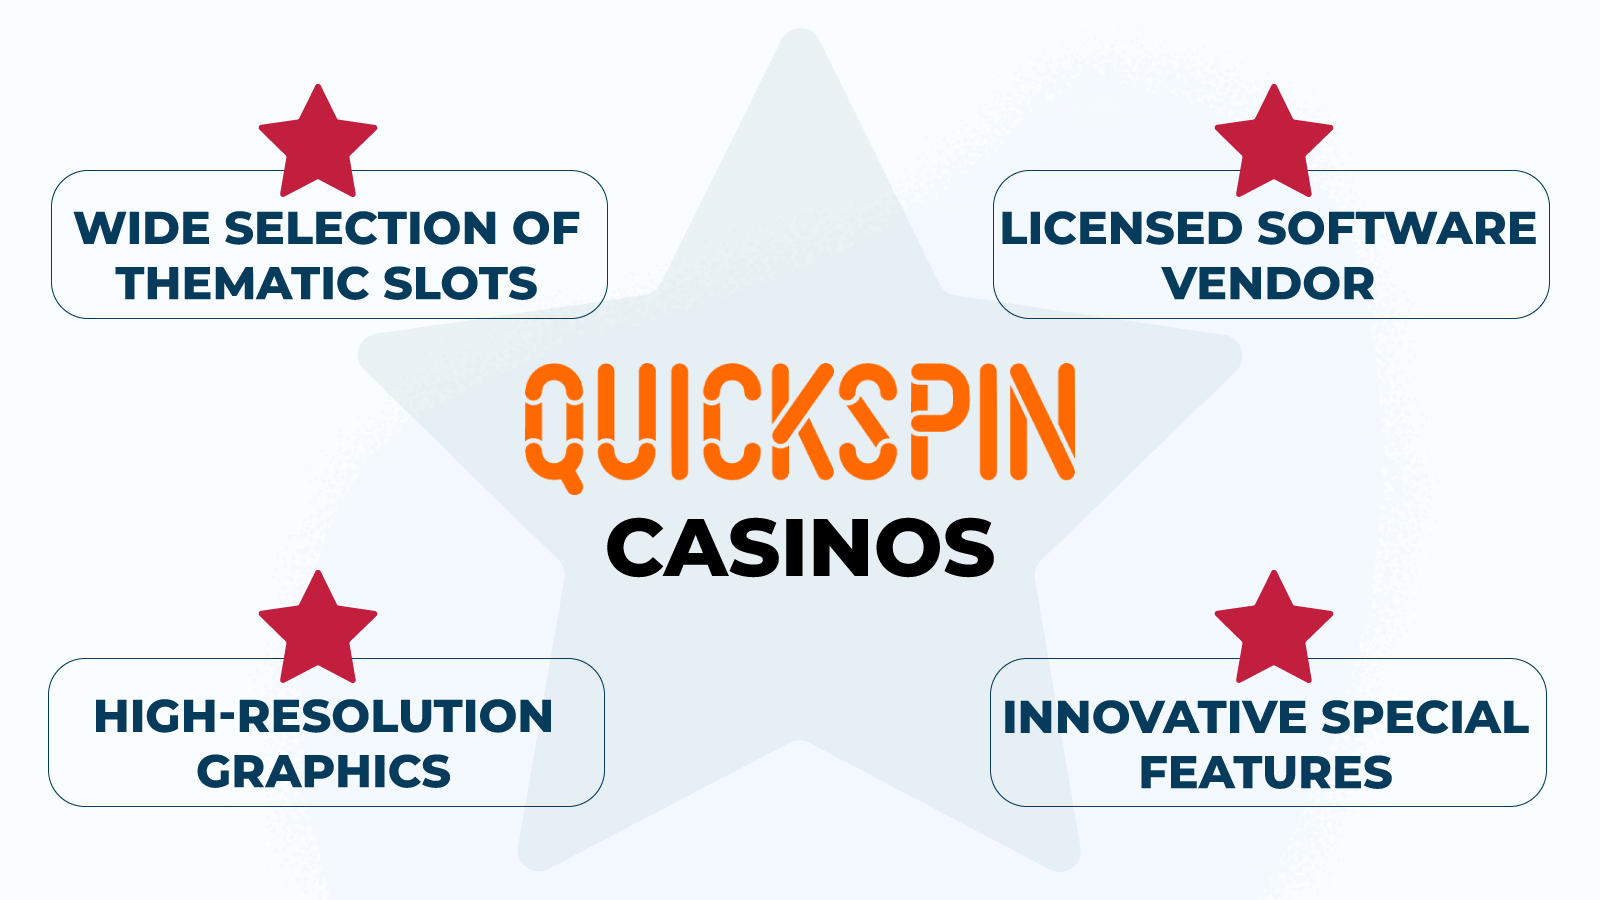 Where do Quickspin Casinos shine